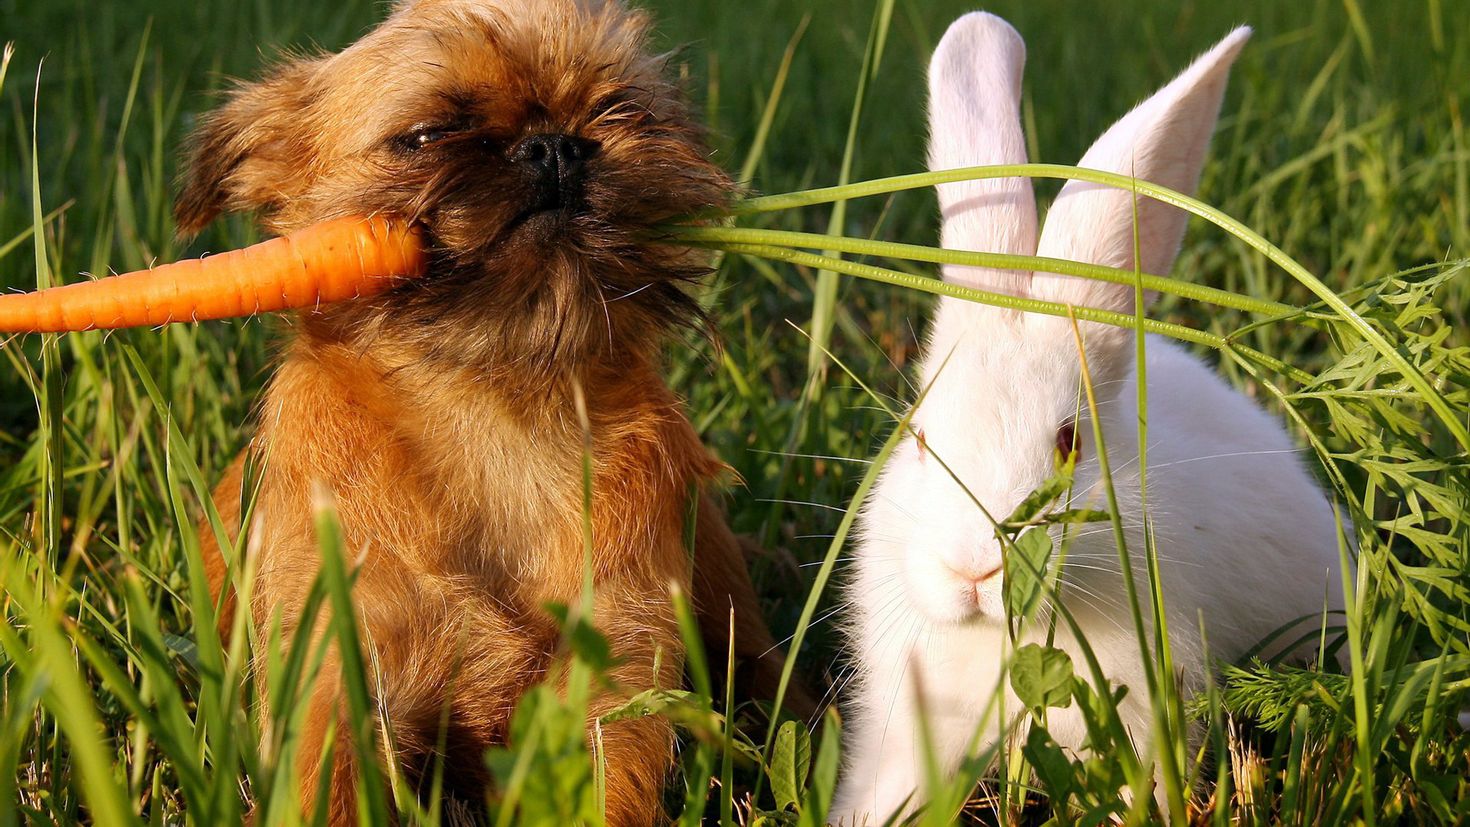 Кролик и собака